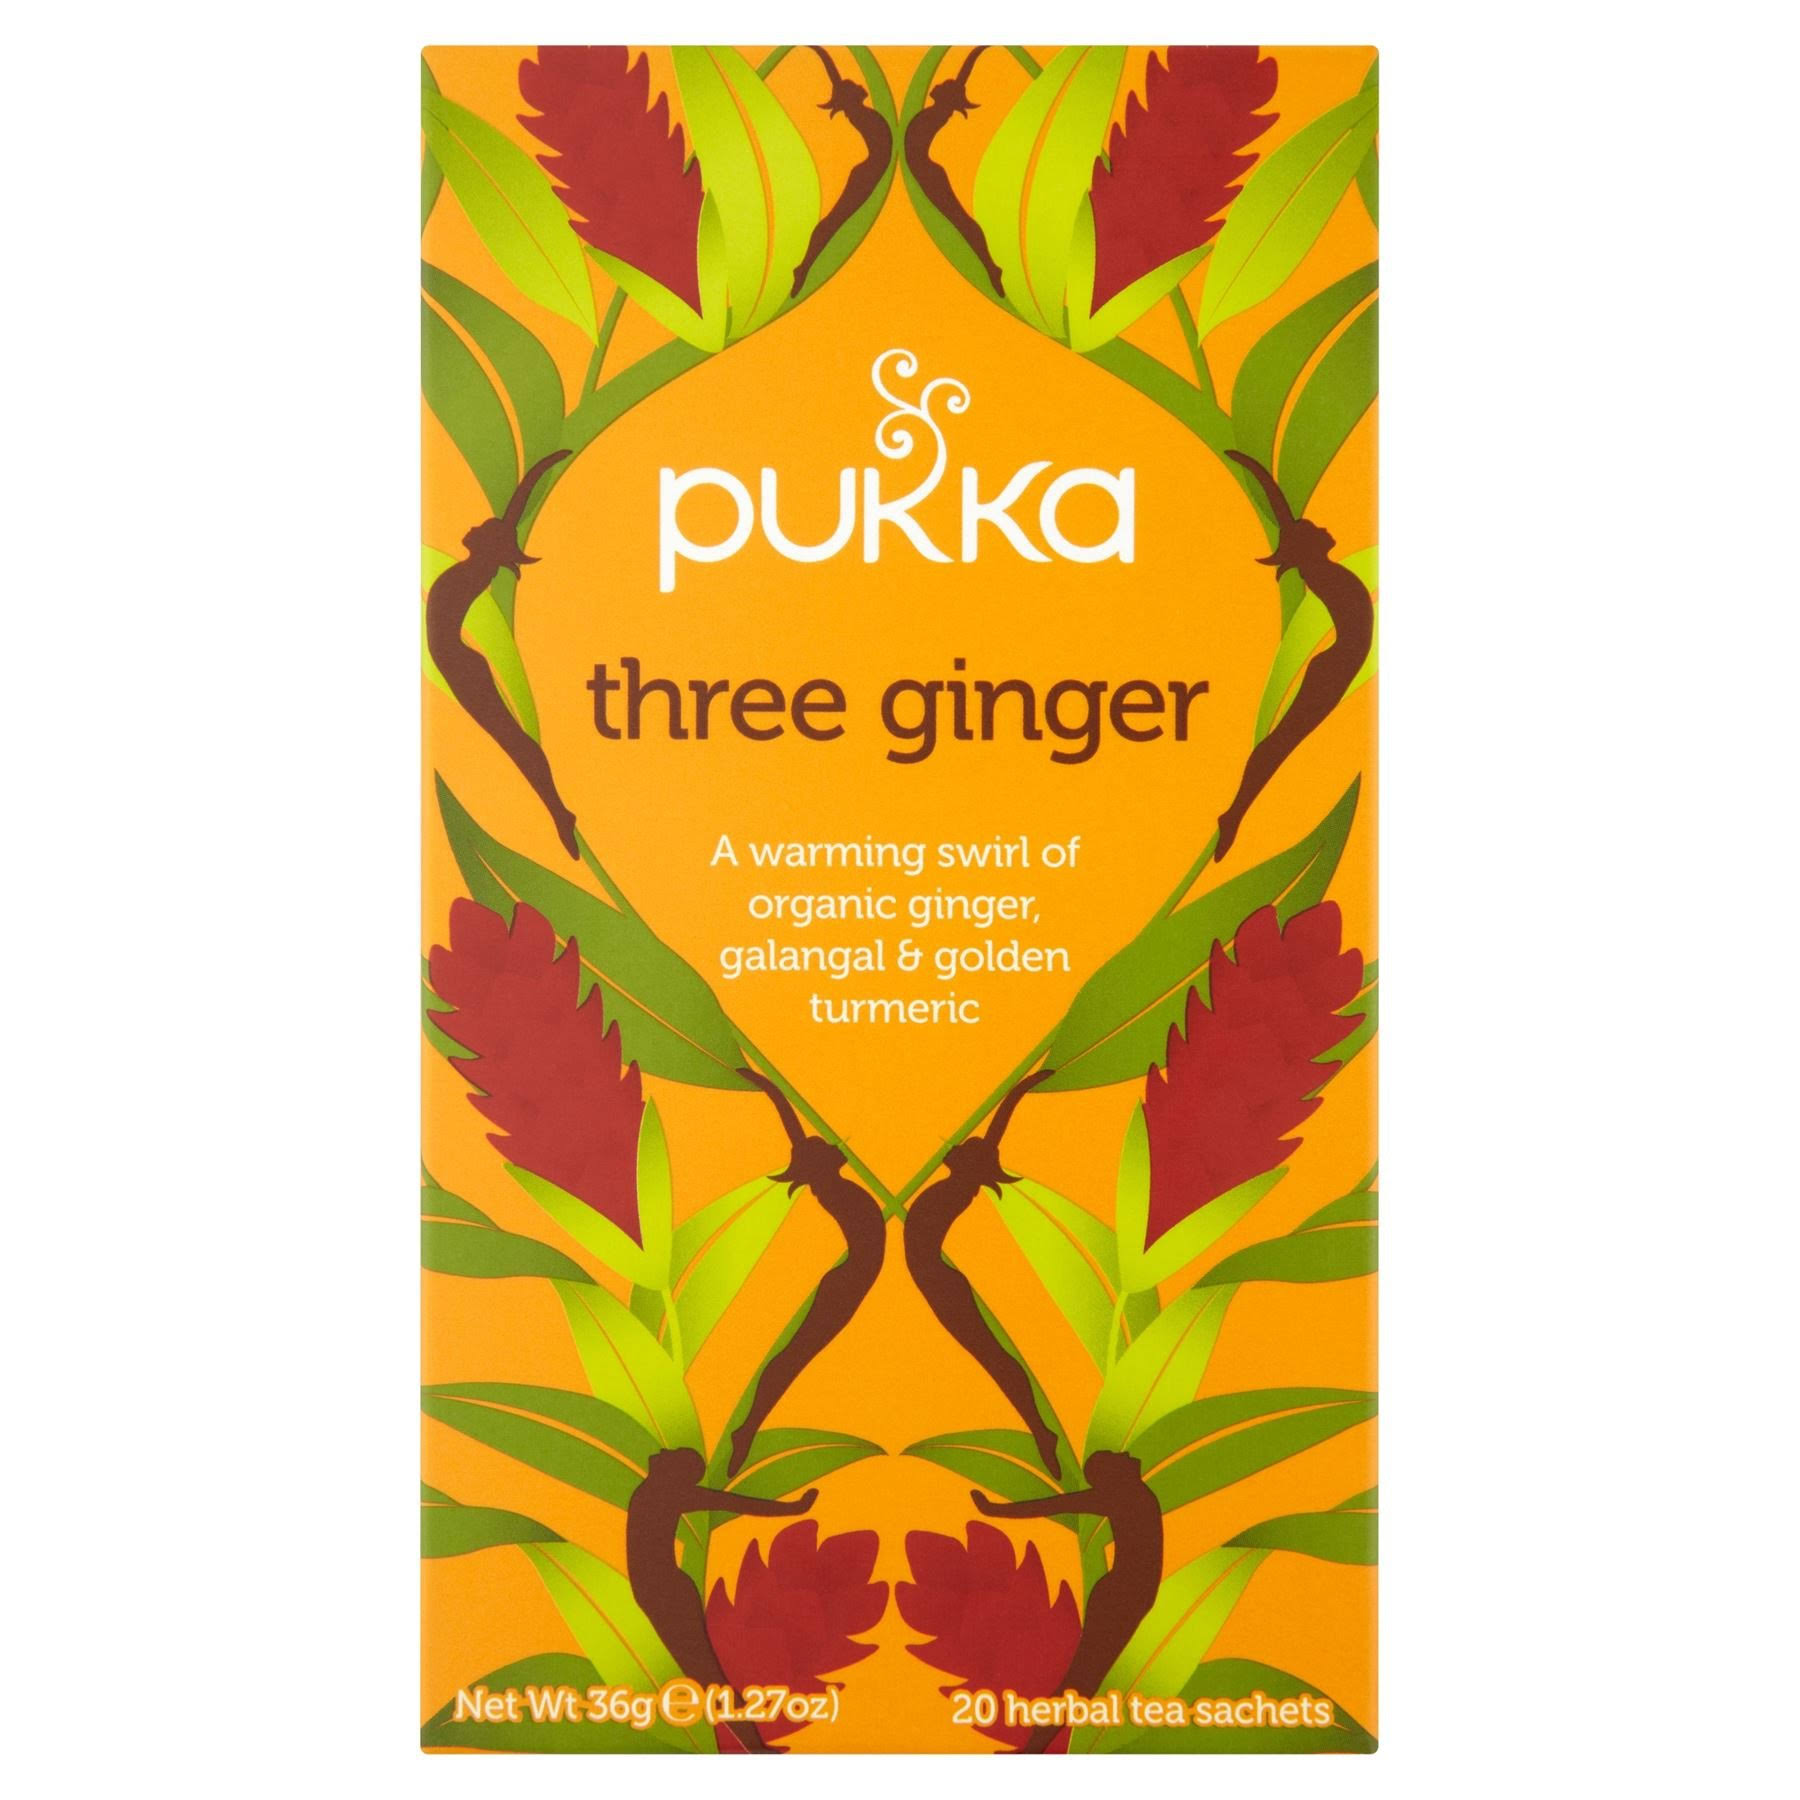 Pukka Organic Herbal Tea - Three Ginger, 36g, 20ct